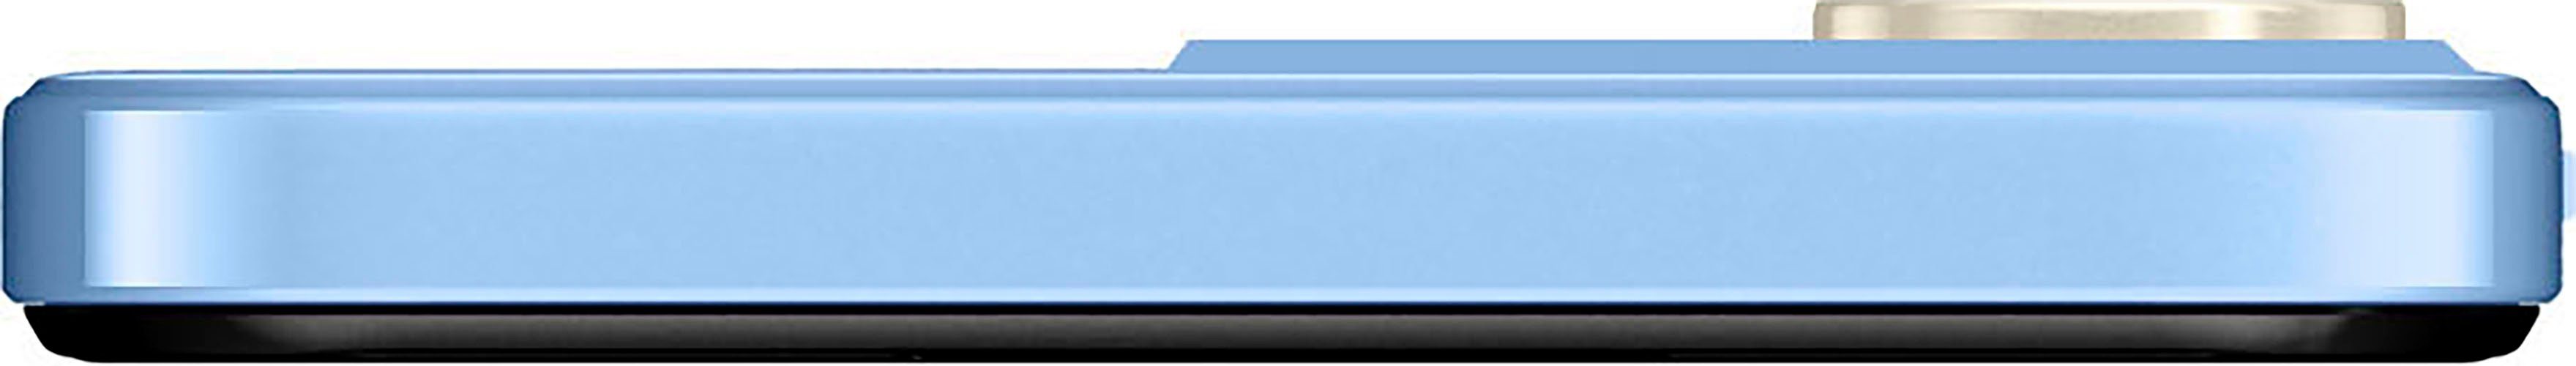 ZTE Blade A73 Smartphone (16,76 50 Kamera) Zoll, cm/6,6 MP 128 blau GB Speicherplatz